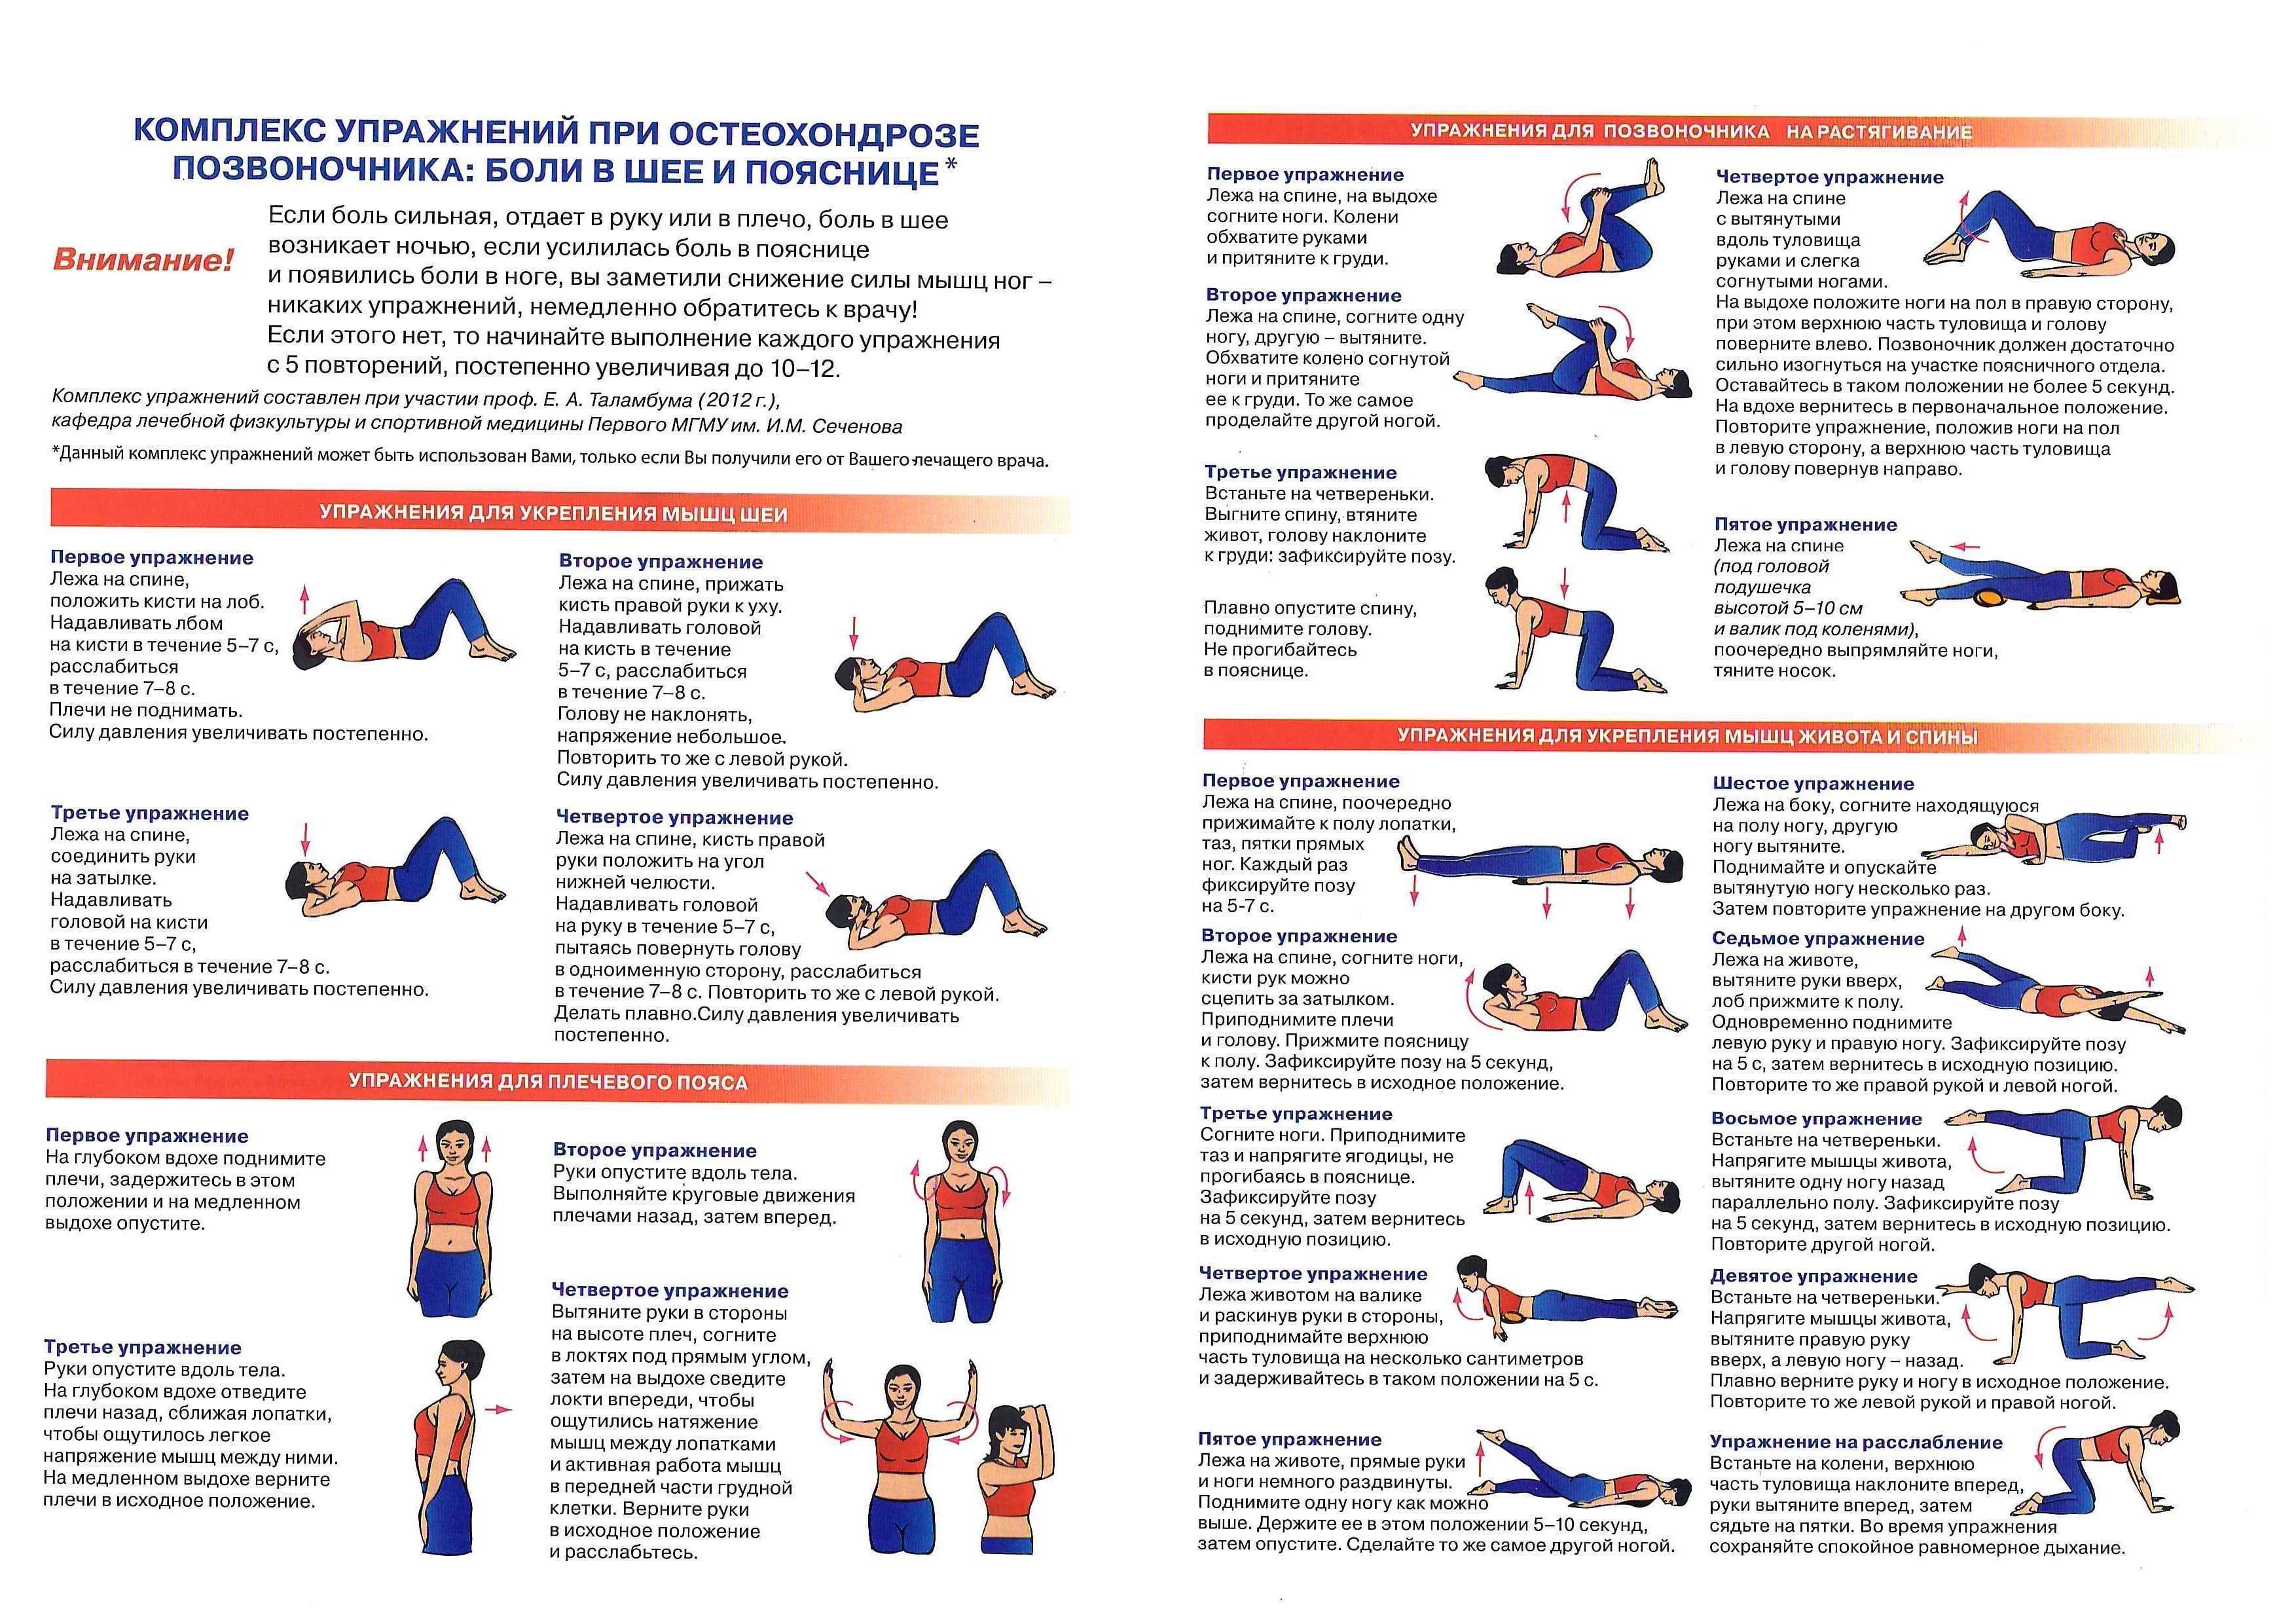 Болит спина? 3 упражнения для расслабления мышц. гимнастика для спины